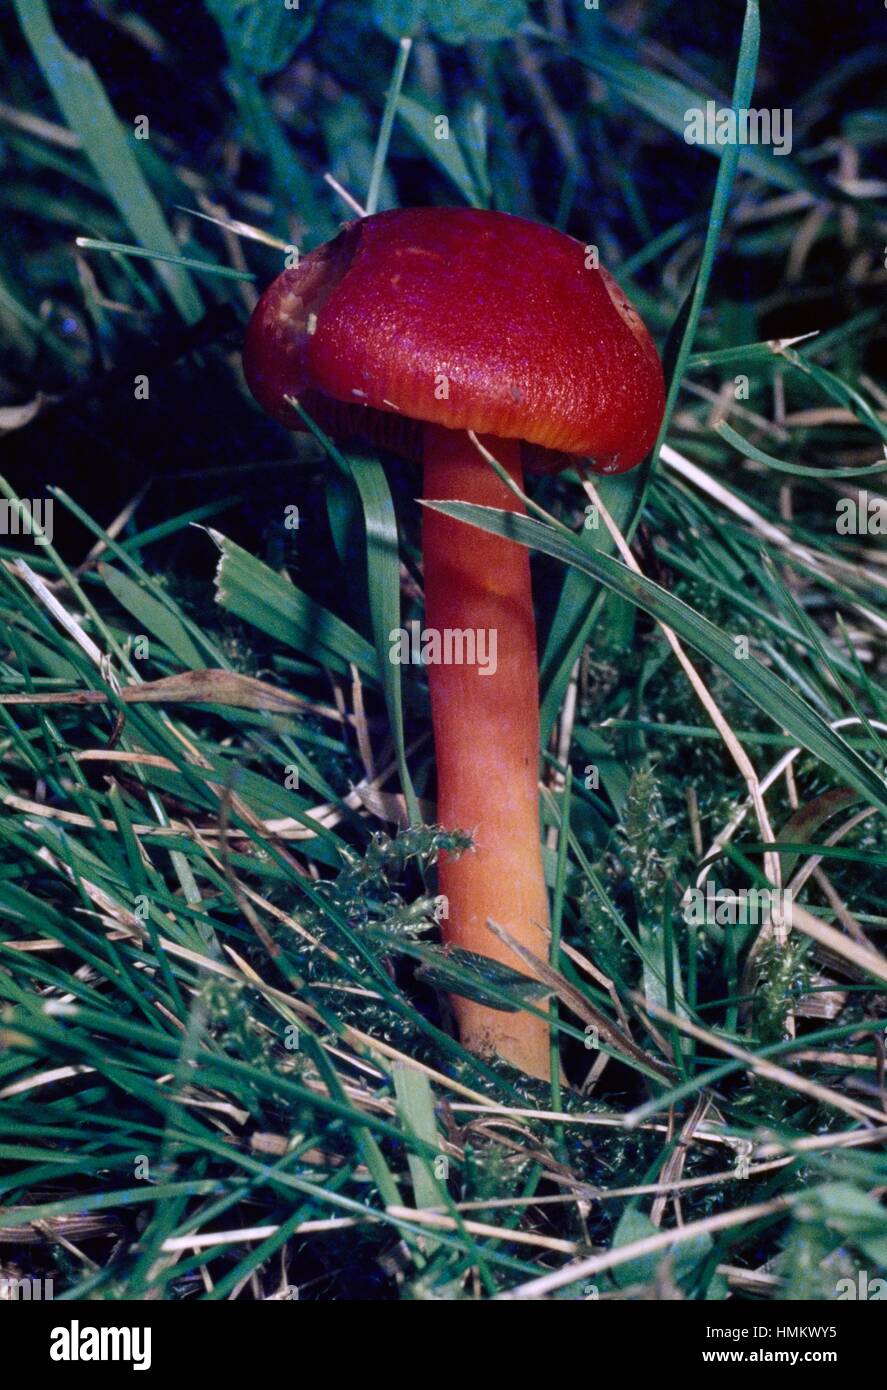 Capucha escarlata, carmesí o rojo waxcap justos ceroso (CAP),  Hygrophoraceae Hygrocybe coccinea Fotografía de stock - Alamy